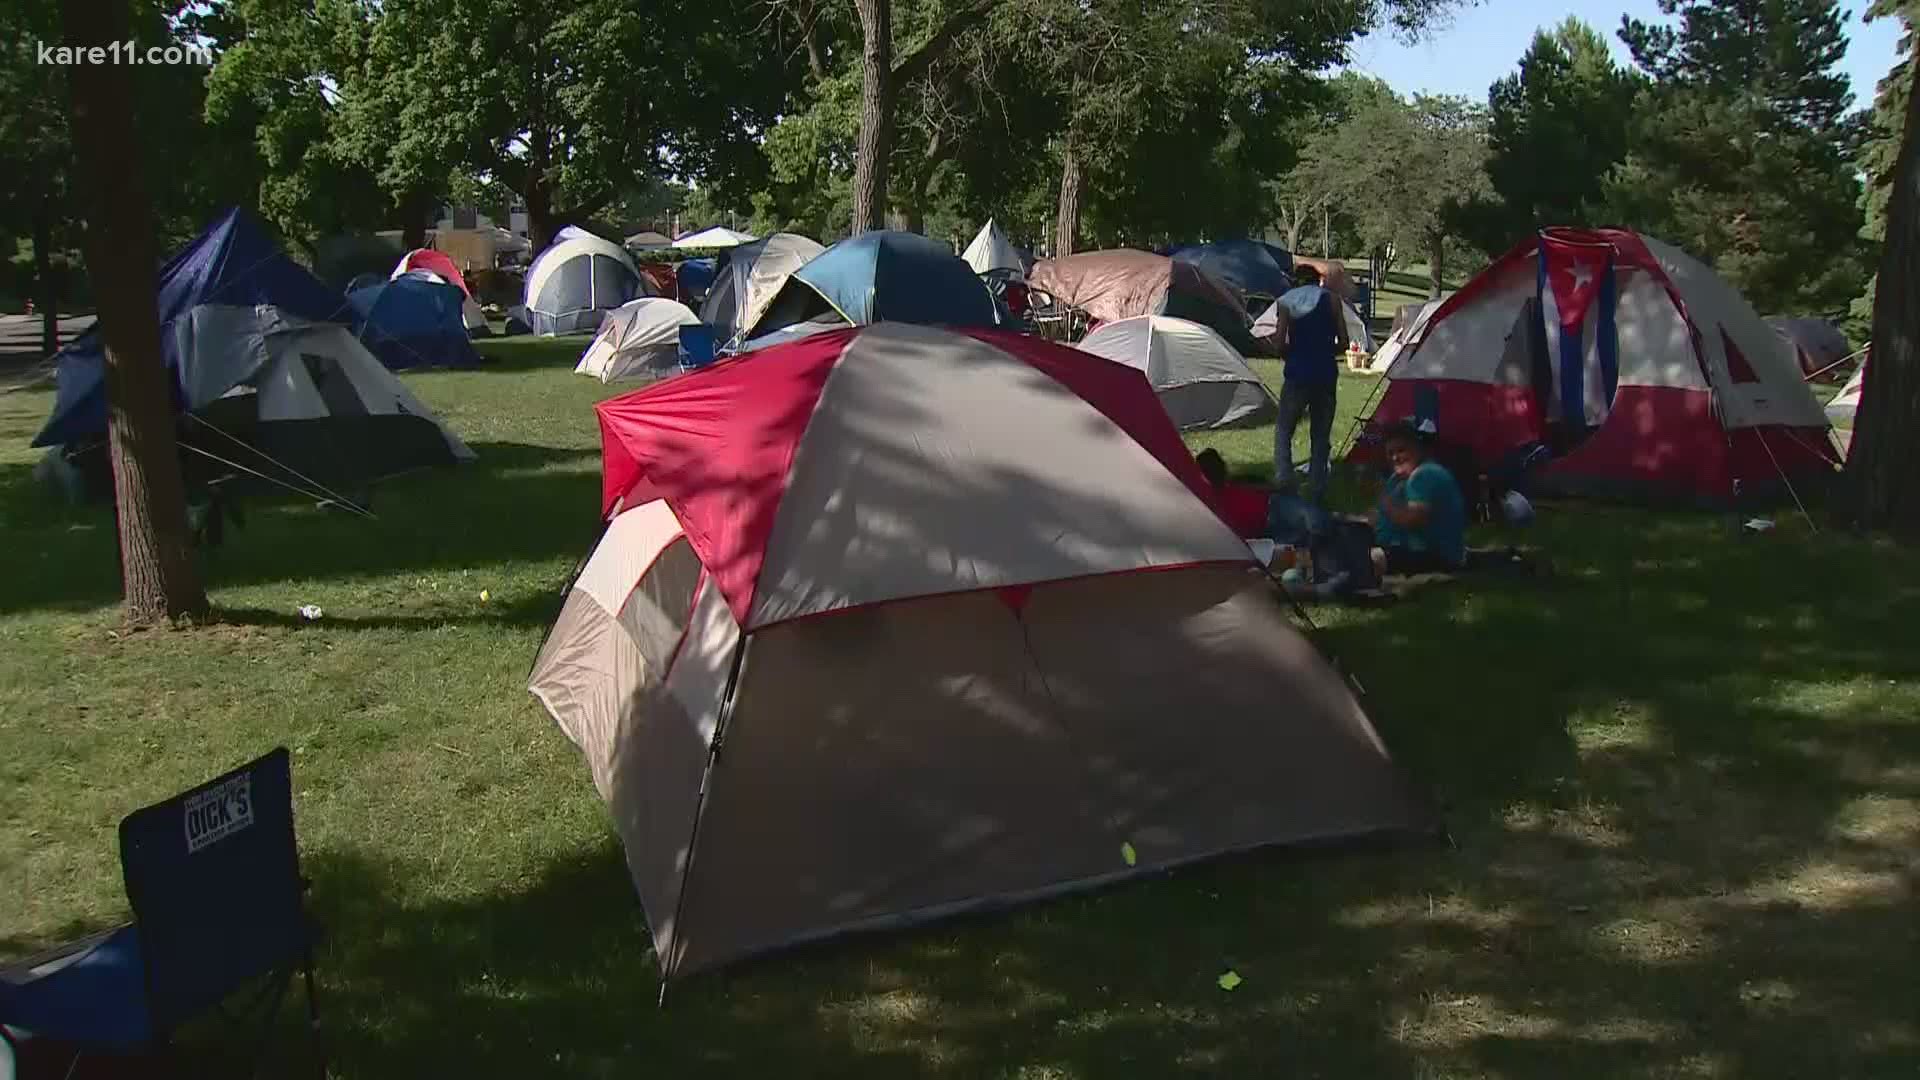 As Powderhorn Park homeless camps grow, neighbors demand help kare11